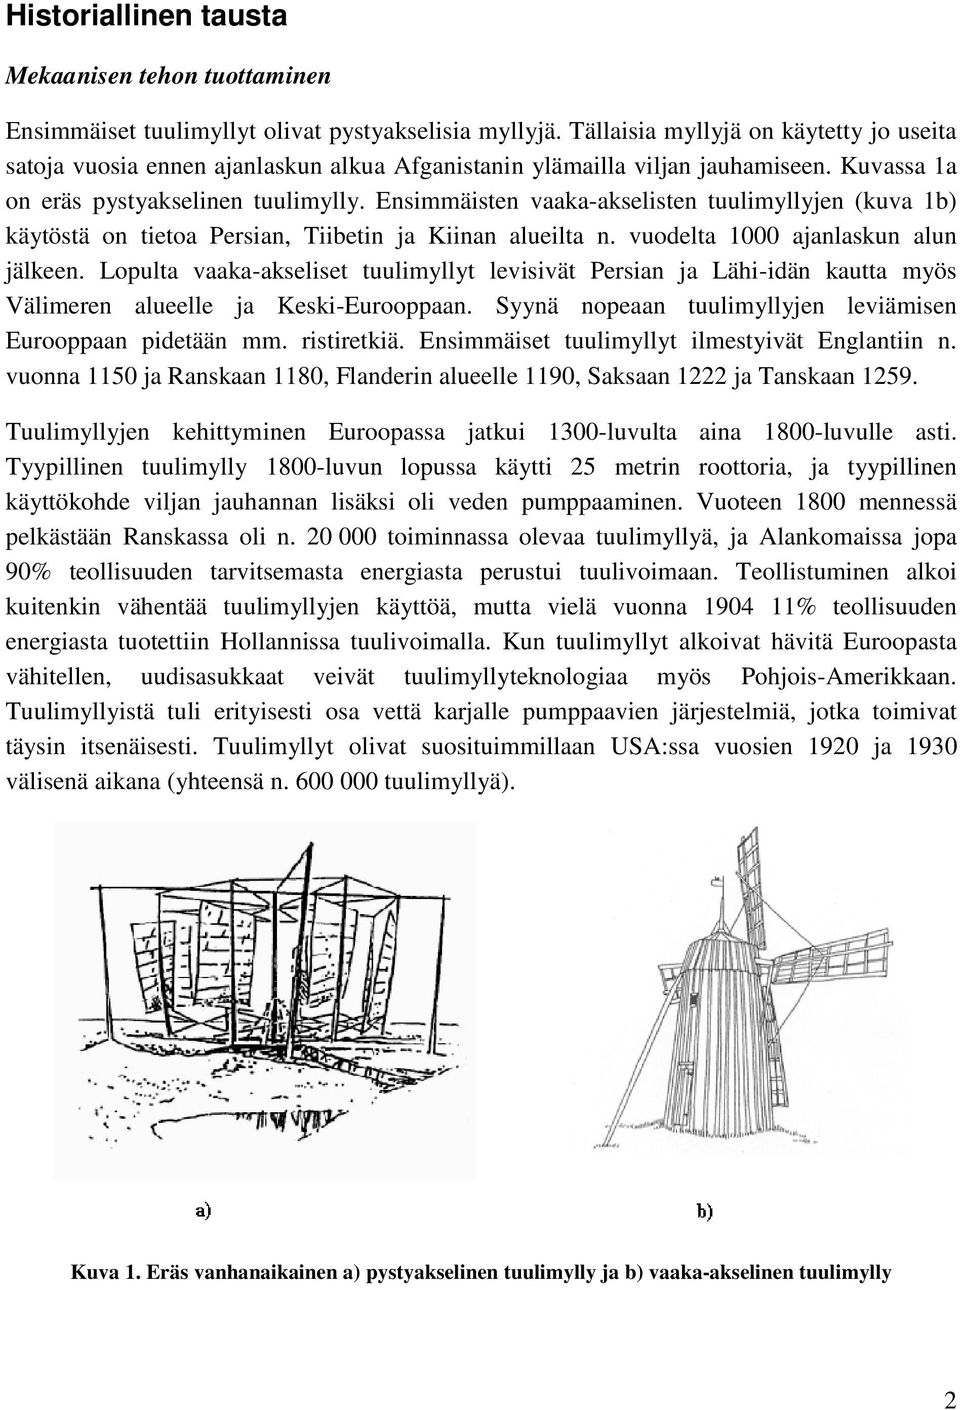 Ensimmäisten vaaka-akselisten tuulimyllyjen (kuva 1b) käytöstä on tietoa Persian, Tiibetin ja Kiinan alueilta n. vuodelta 1000 ajanlaskun alun jälkeen.